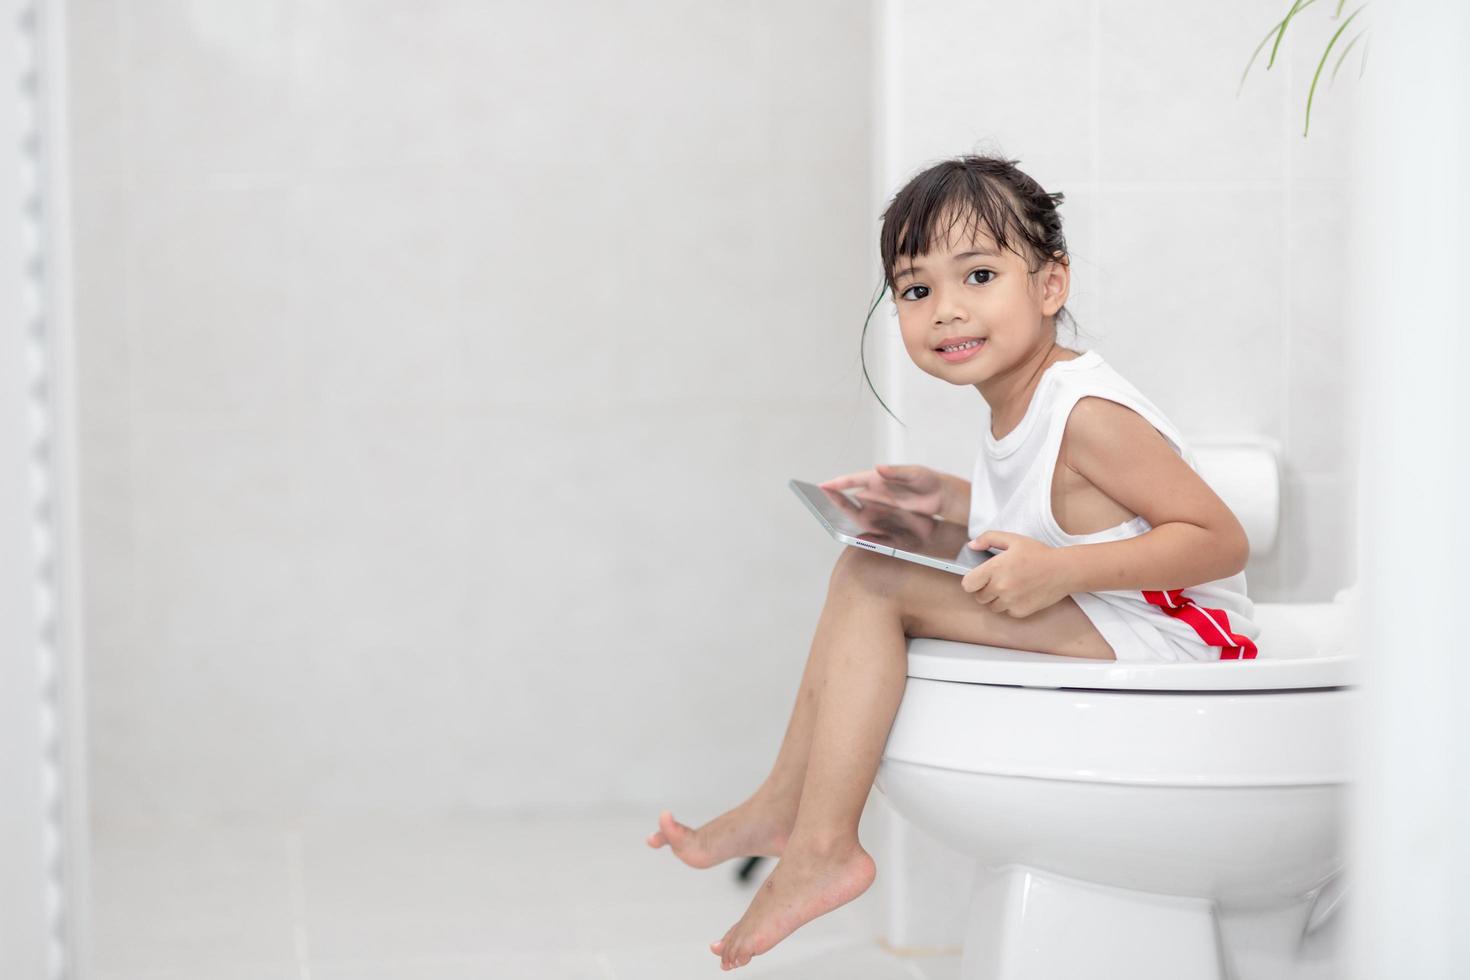 kind, das auf der toilette sitzt und das tablet hält. kindersüchtiges smartphone-konzept foto